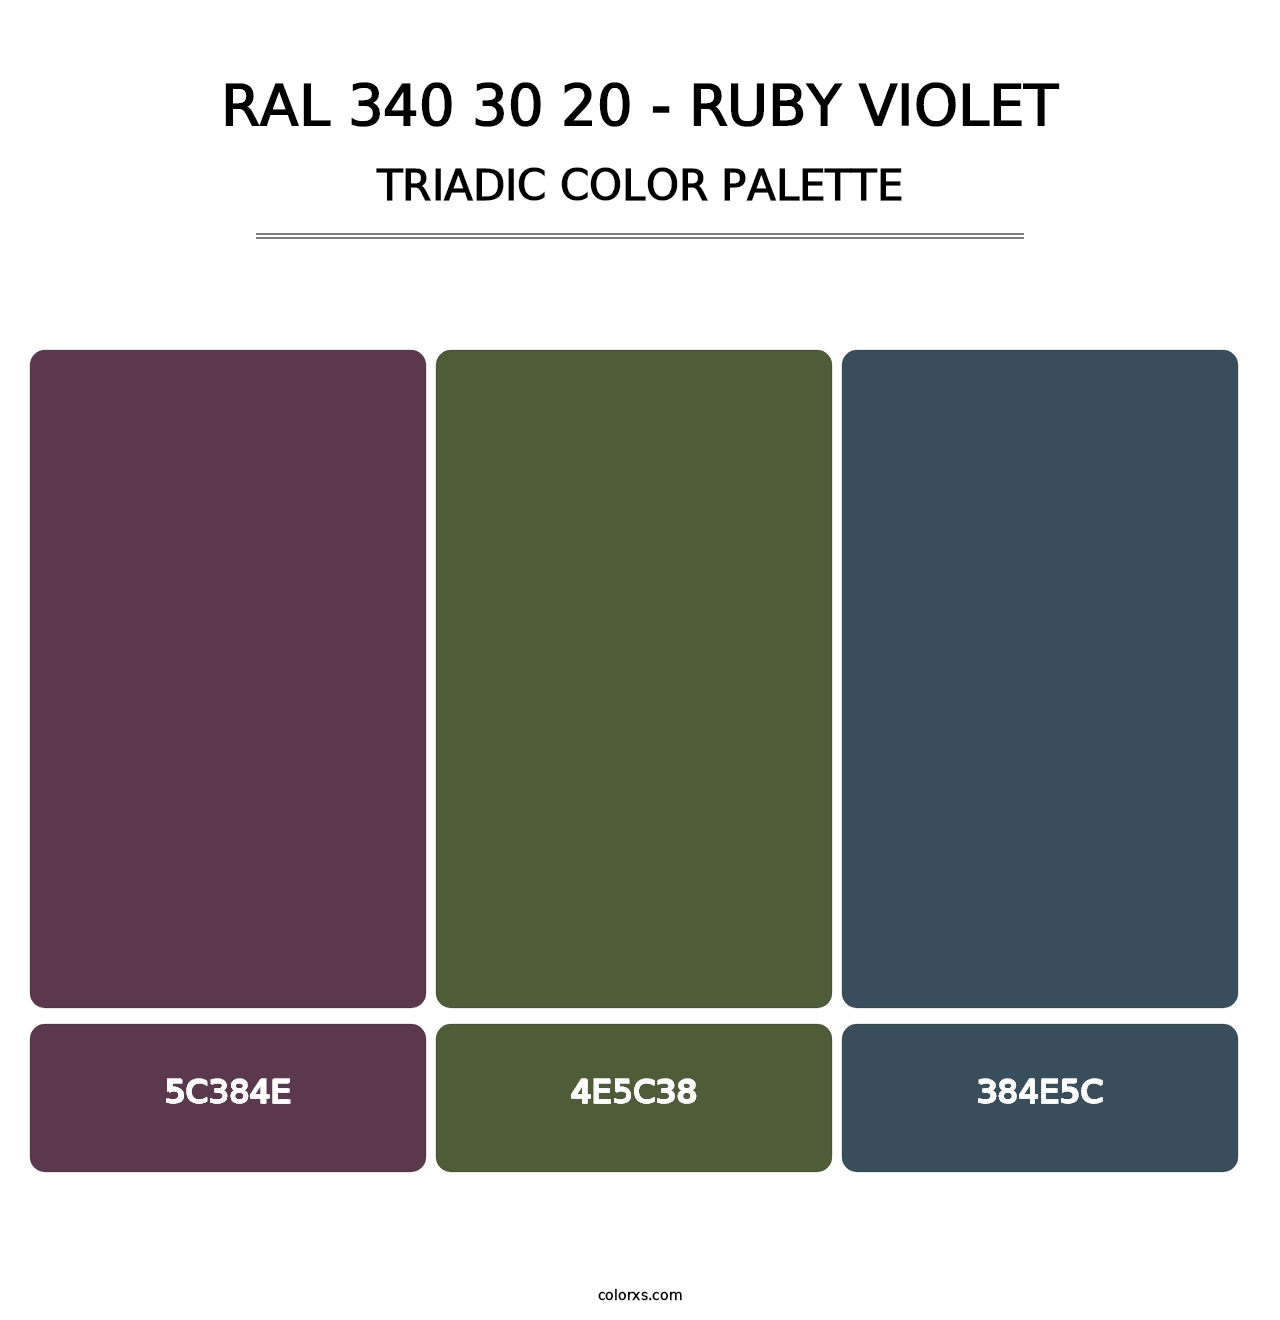 RAL 340 30 20 - Ruby Violet - Triadic Color Palette